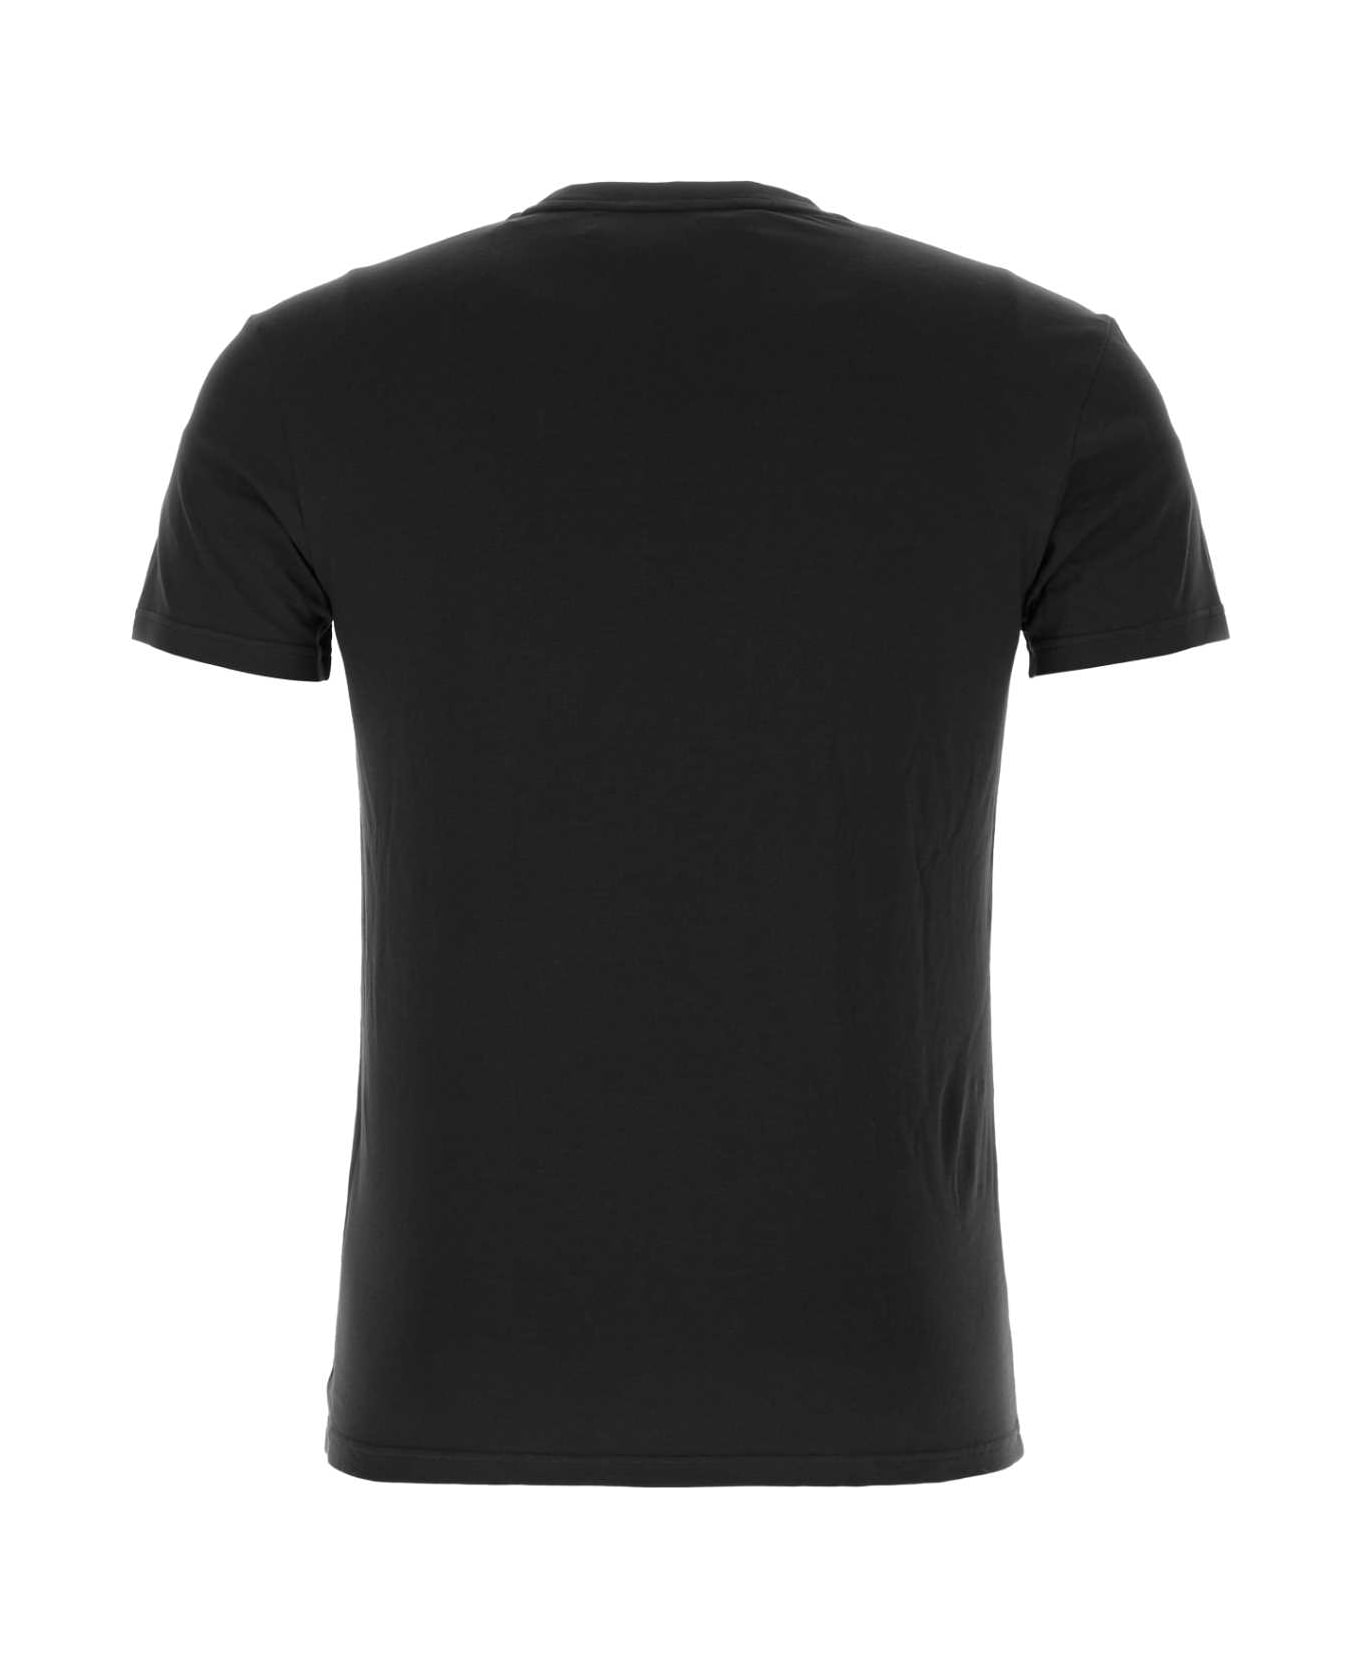 Emporio Armani Black Stretch Cotton T-shirt - 00020 シャツ